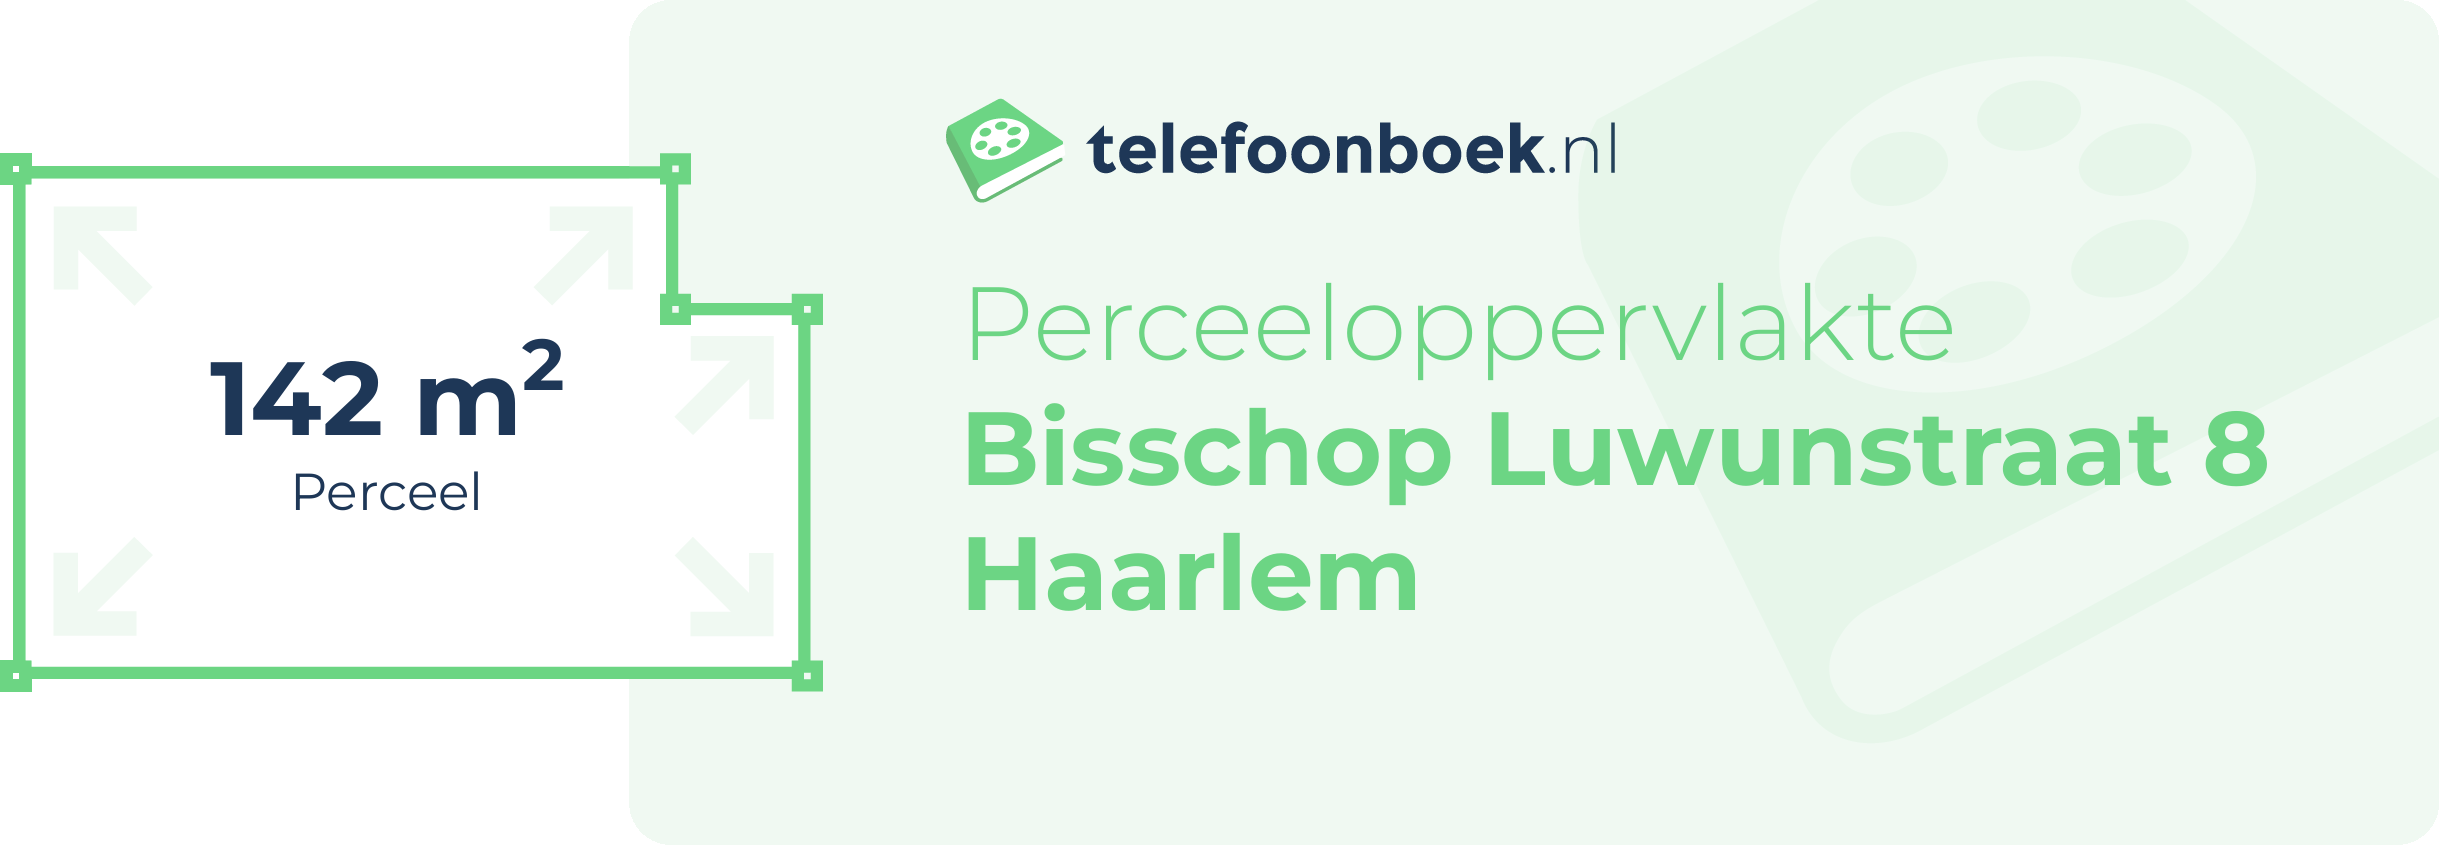 Perceeloppervlakte Bisschop Luwunstraat 8 Haarlem